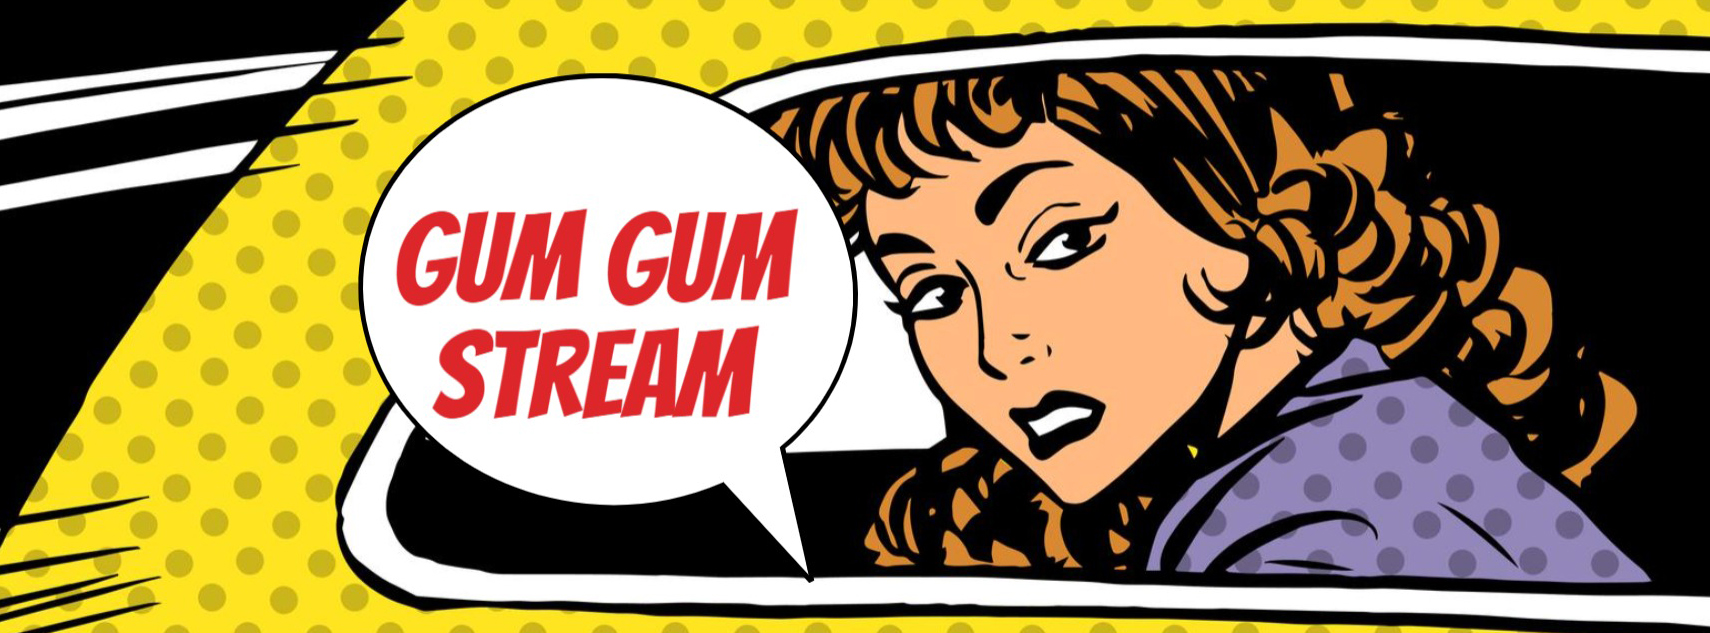 Gum Gum Streaming: смотрите все любимые аниме и мангу в потоковом режиме VF и VOSTFR (выпуск 2021 года)